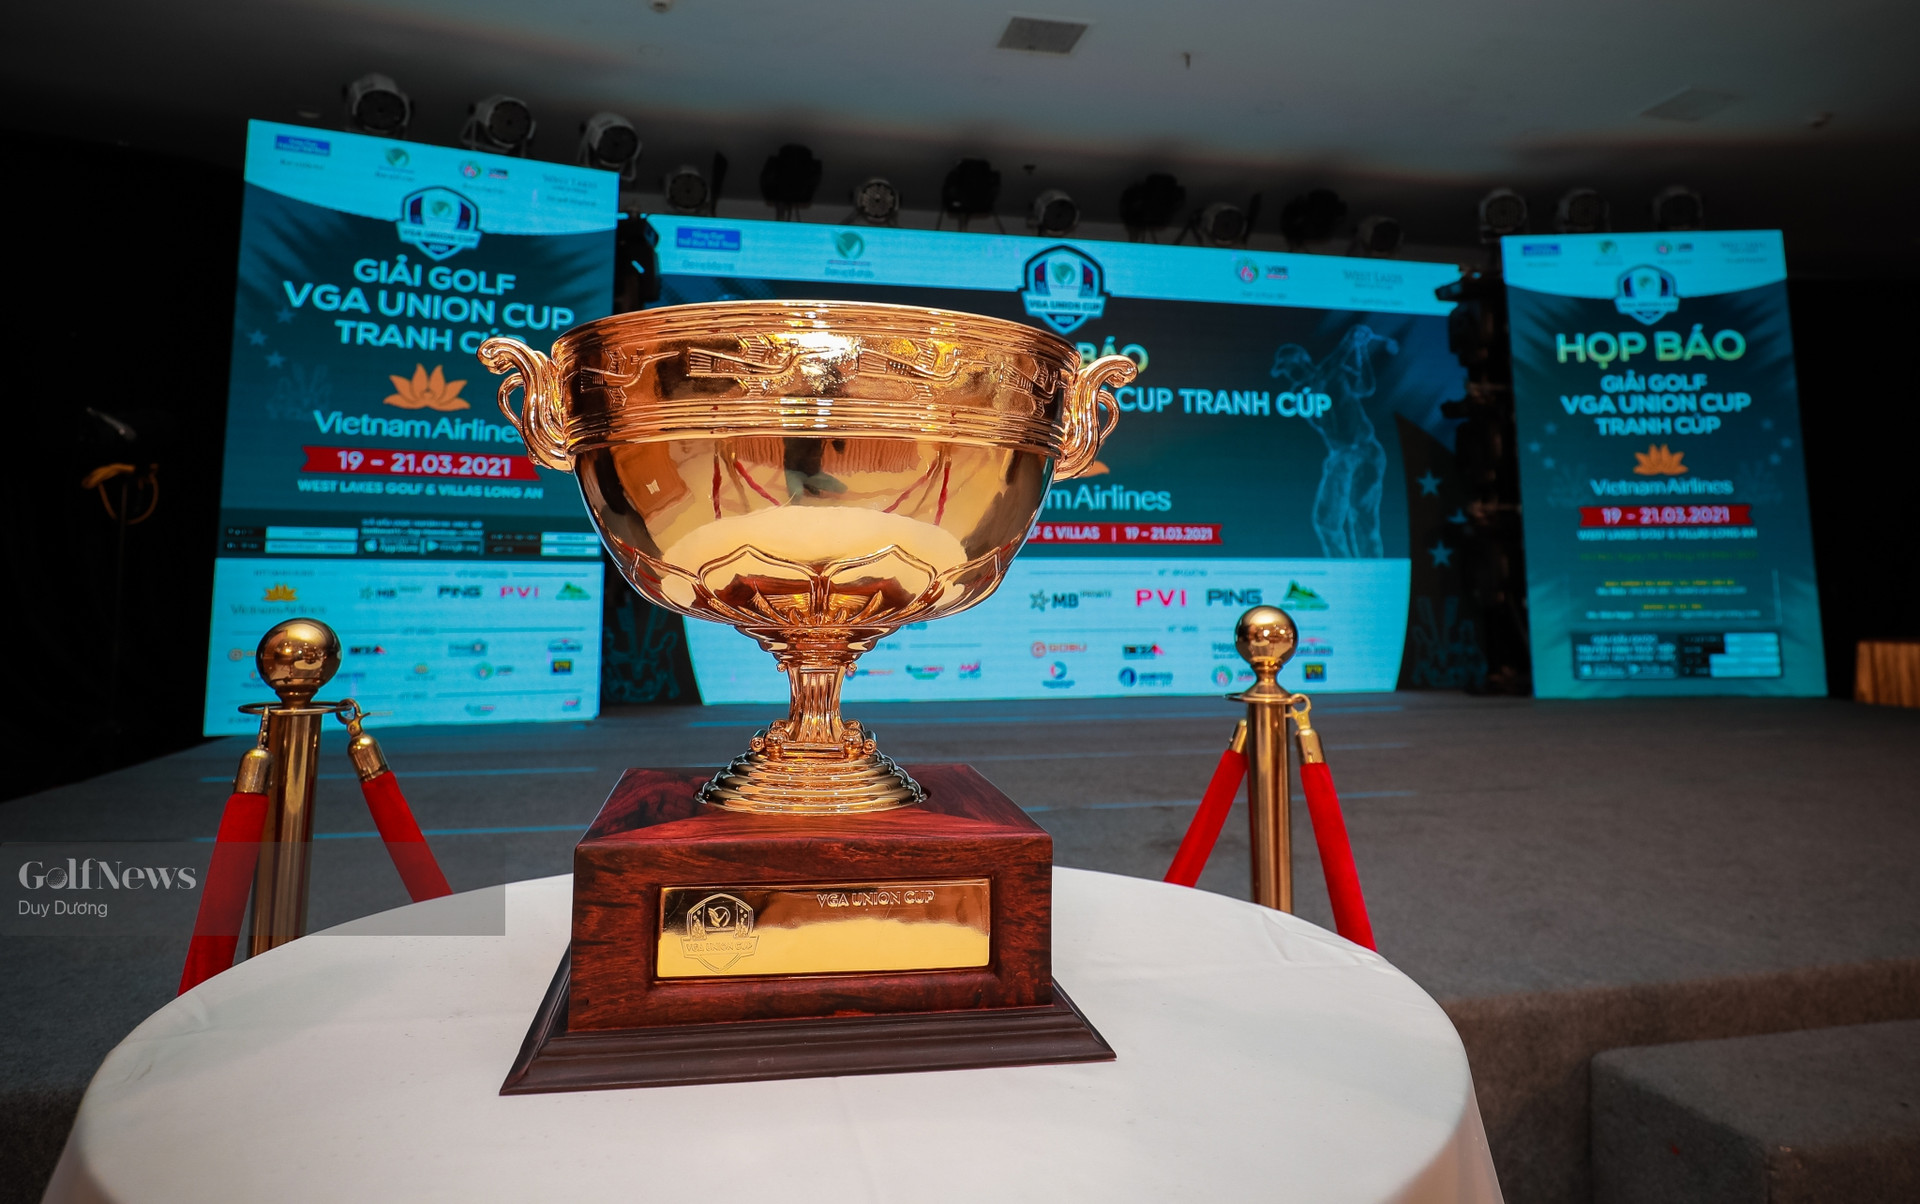 VGS Group tặng chiếc cúp mới cho giải VGA Union Cup - Ảnh 2.